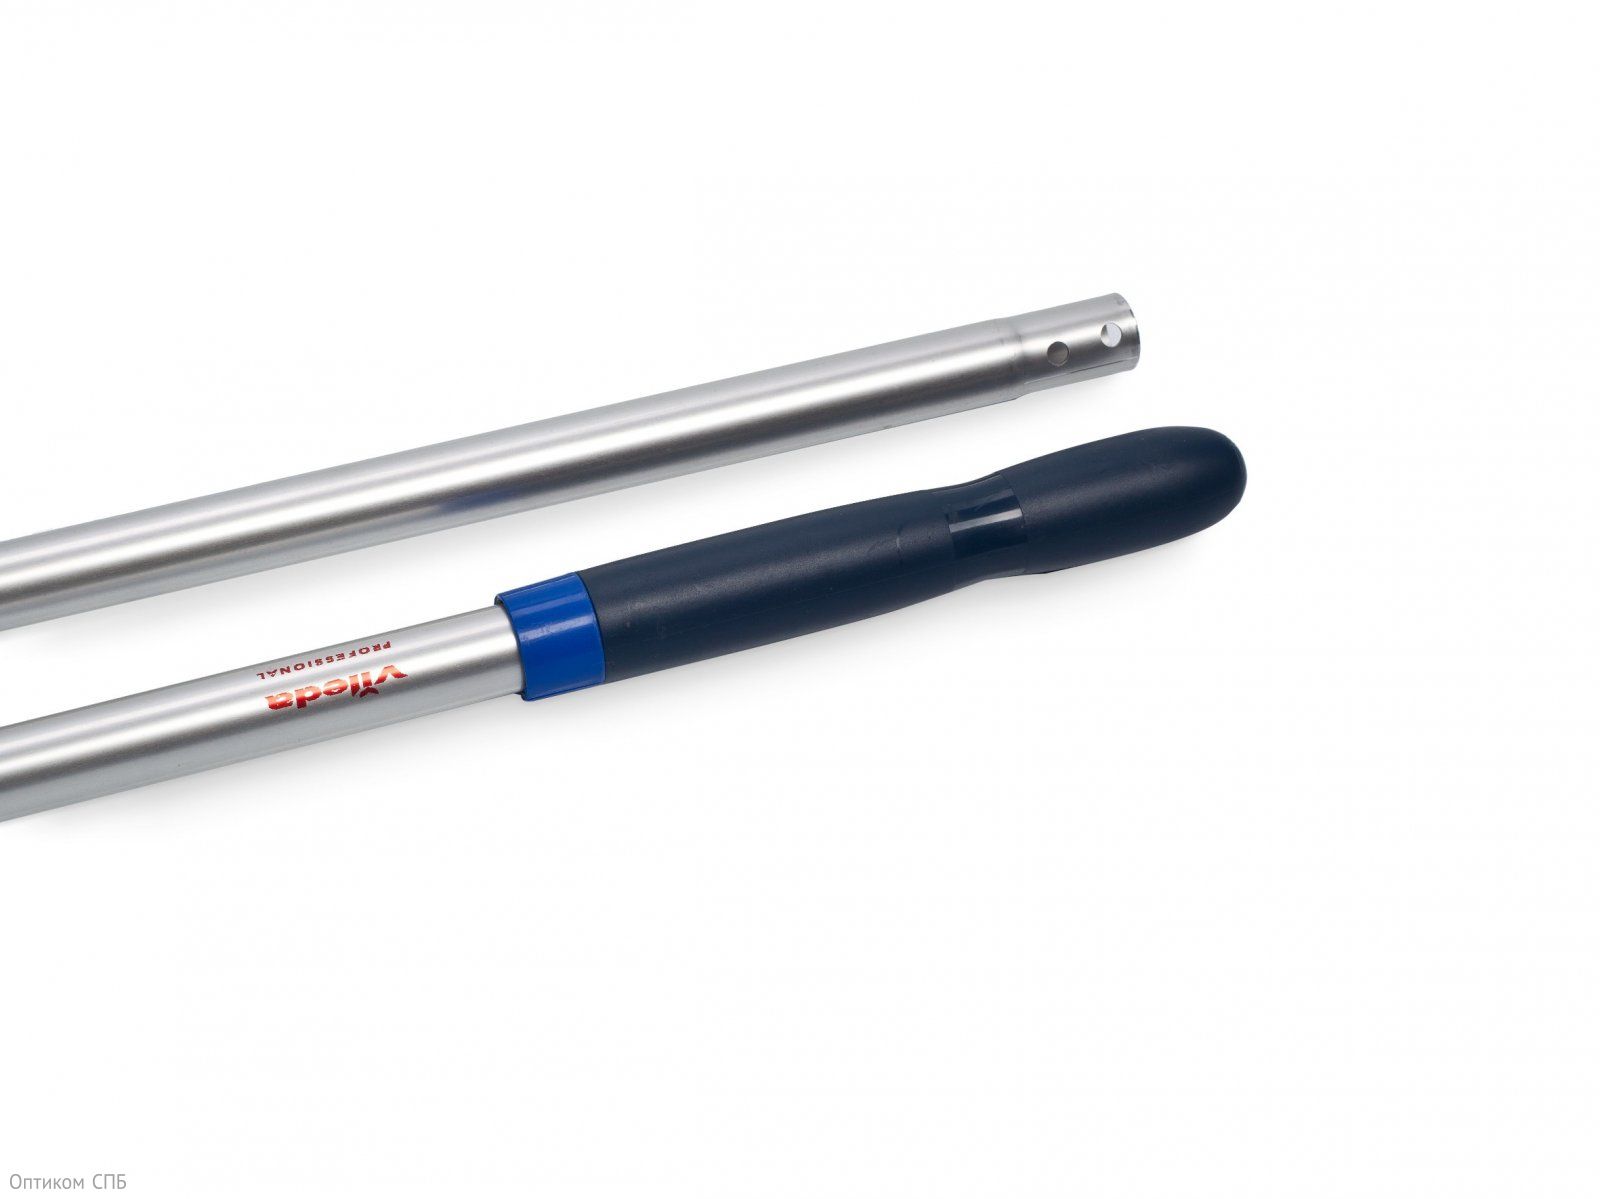 Легкая алюминиевая ручка Vileda (Виледа) фиксированной длины имеет длинную рукоятку (18,5 см) эргономичной формы с закругленным концом, с удобным и хорошим захватом. Традиционно используется с держателями УльтраСпид, Хай-Спид, Комбиспид